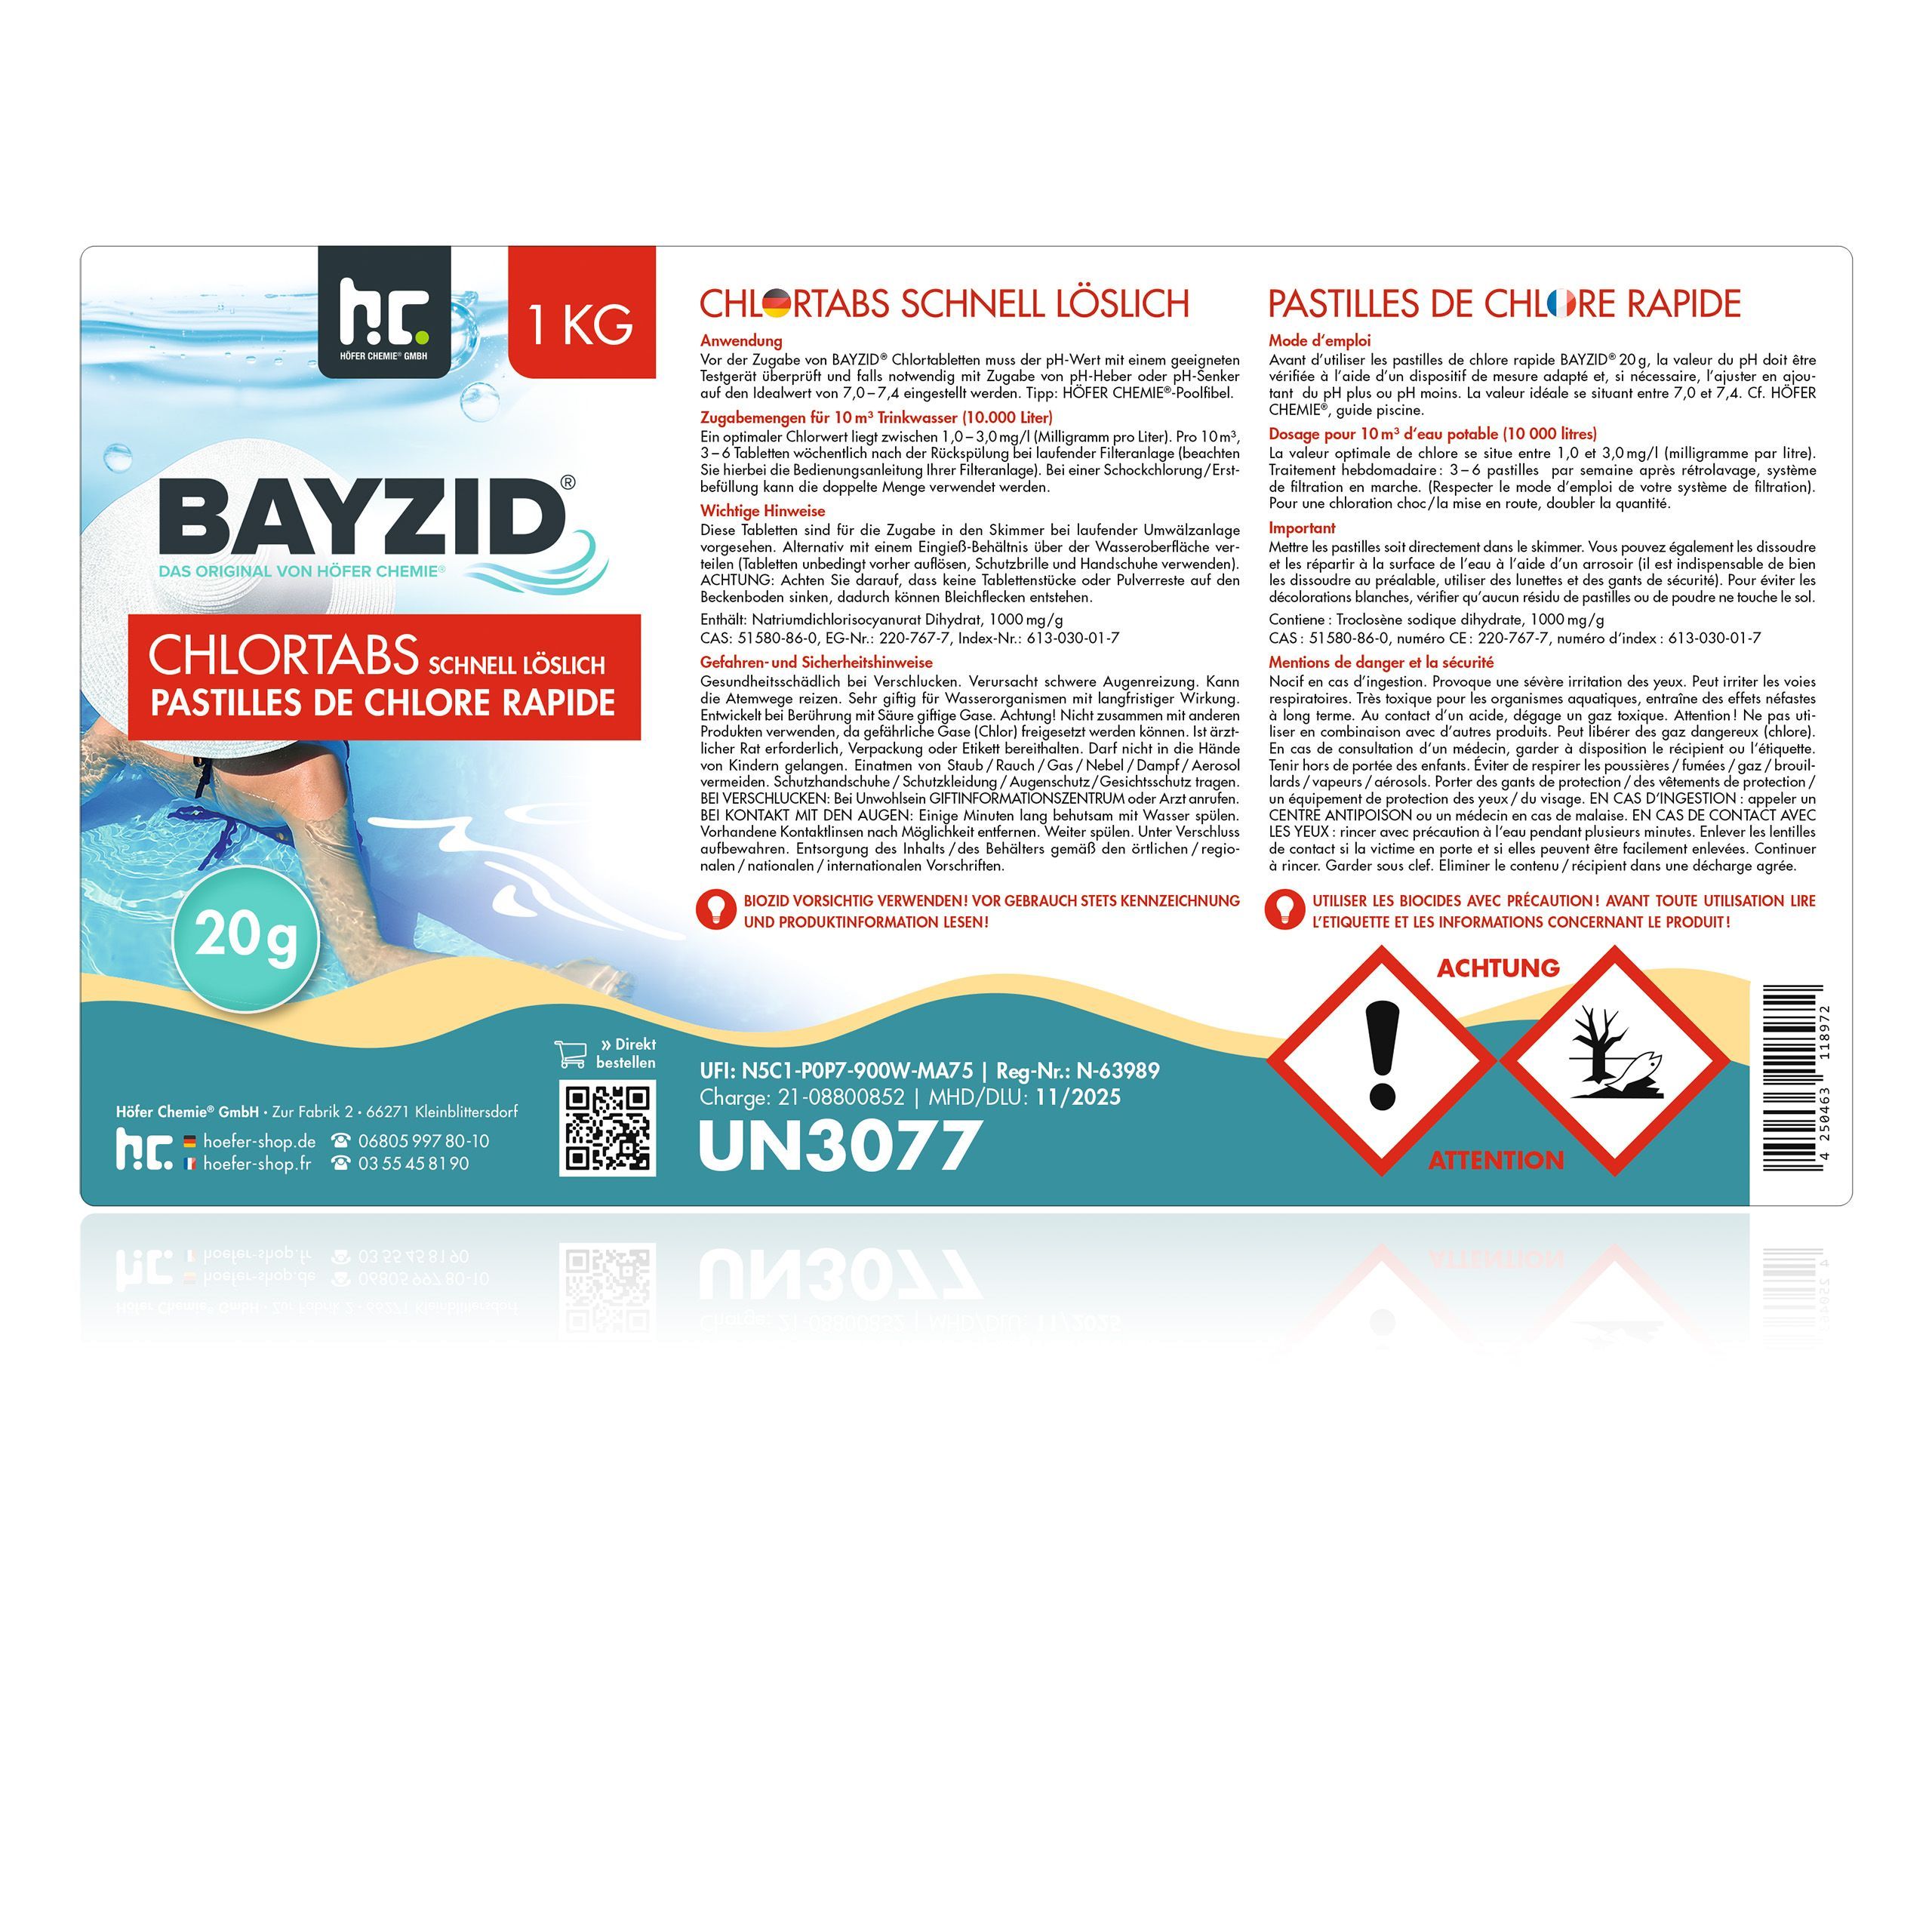 1 Kg Bayzid® Pastilles de chlore choc (20g)